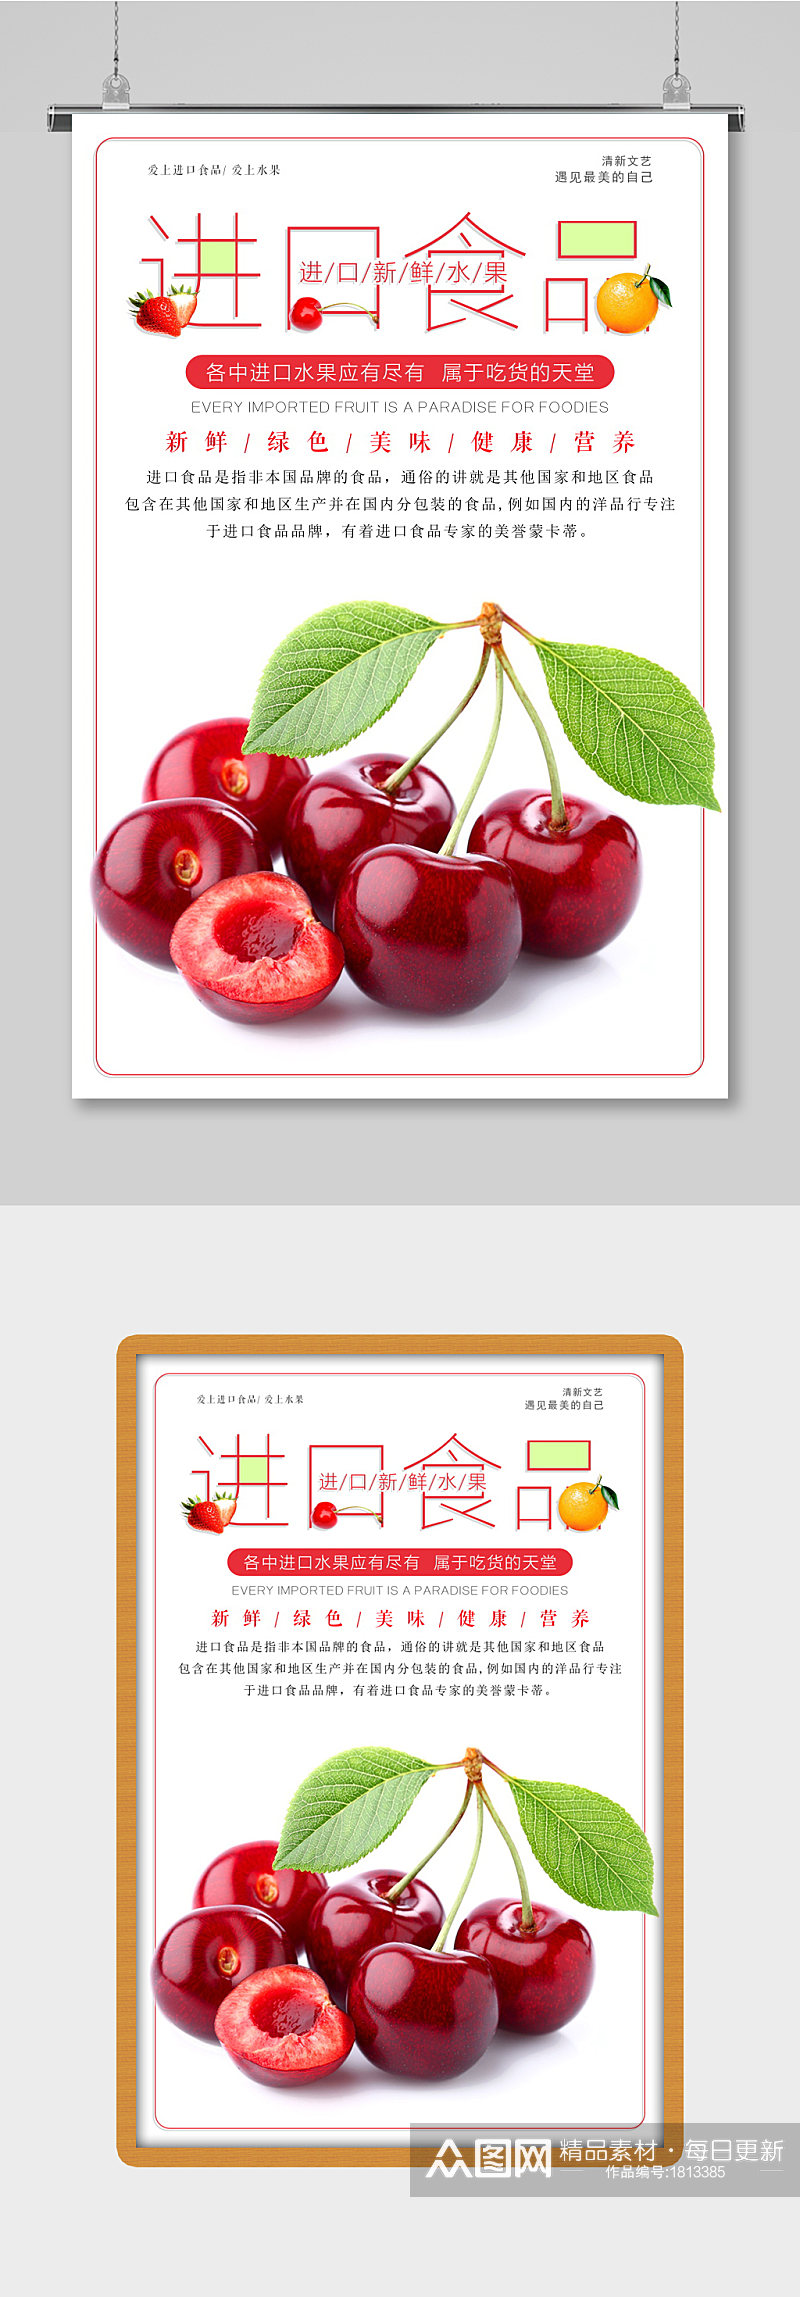 进口食品樱桃水果海报设计素材